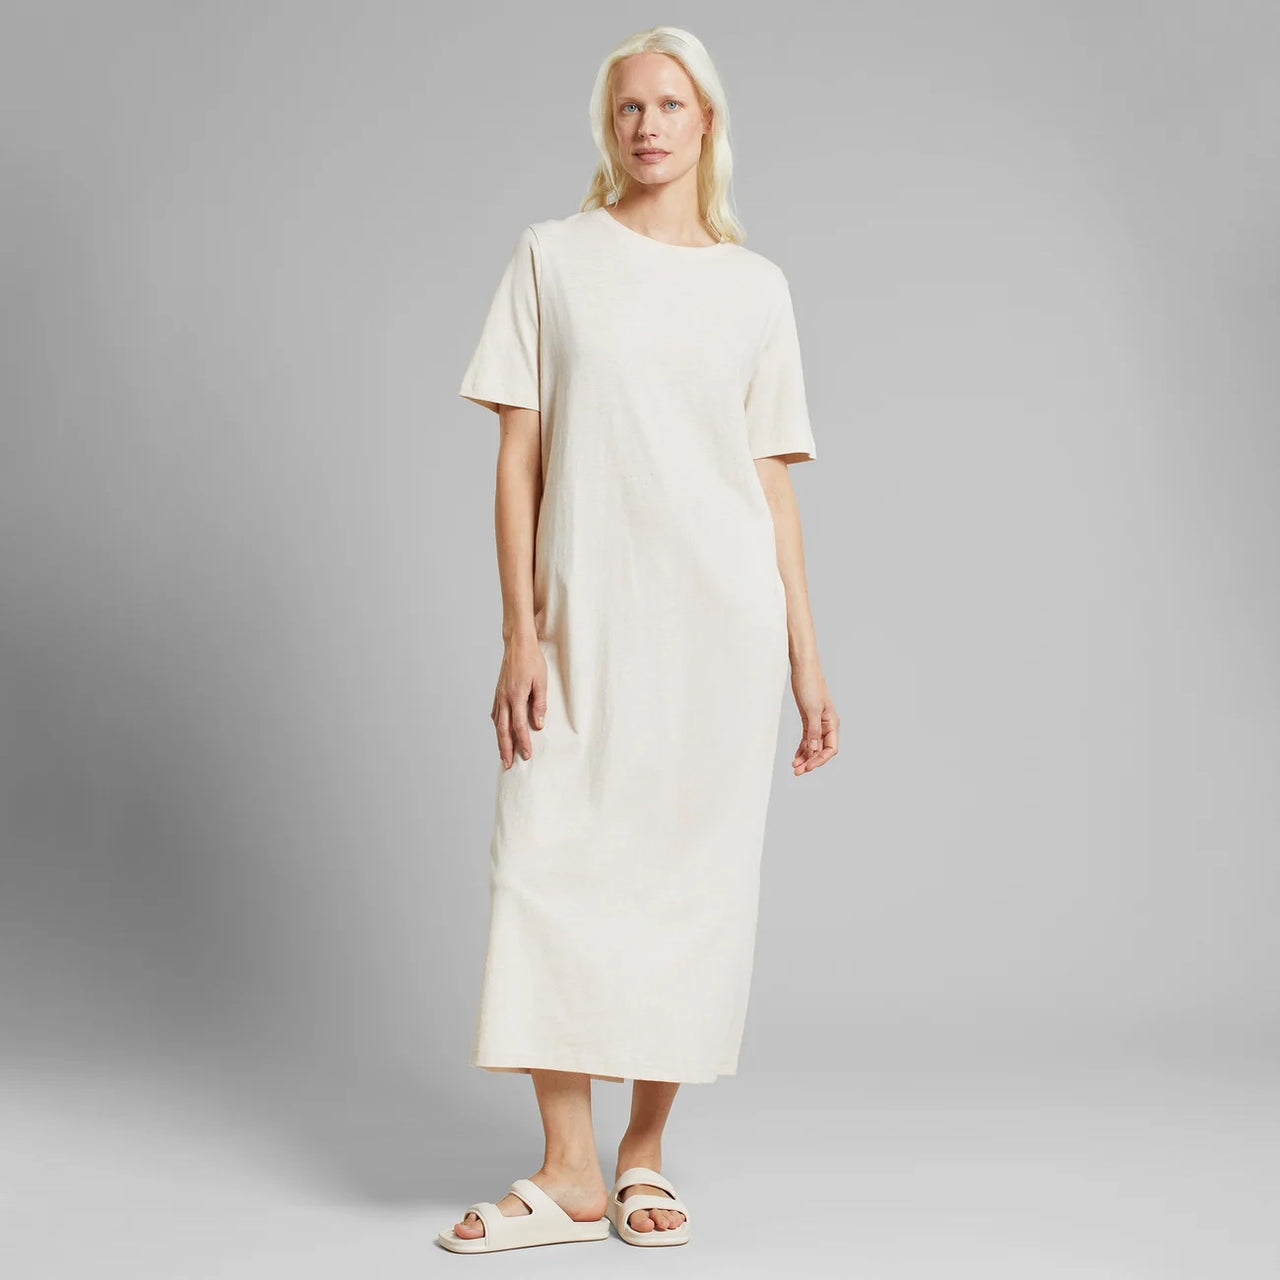 Dress Lammhult Hemp Vanilla White Vanilla White - LEEF mode en accessoires